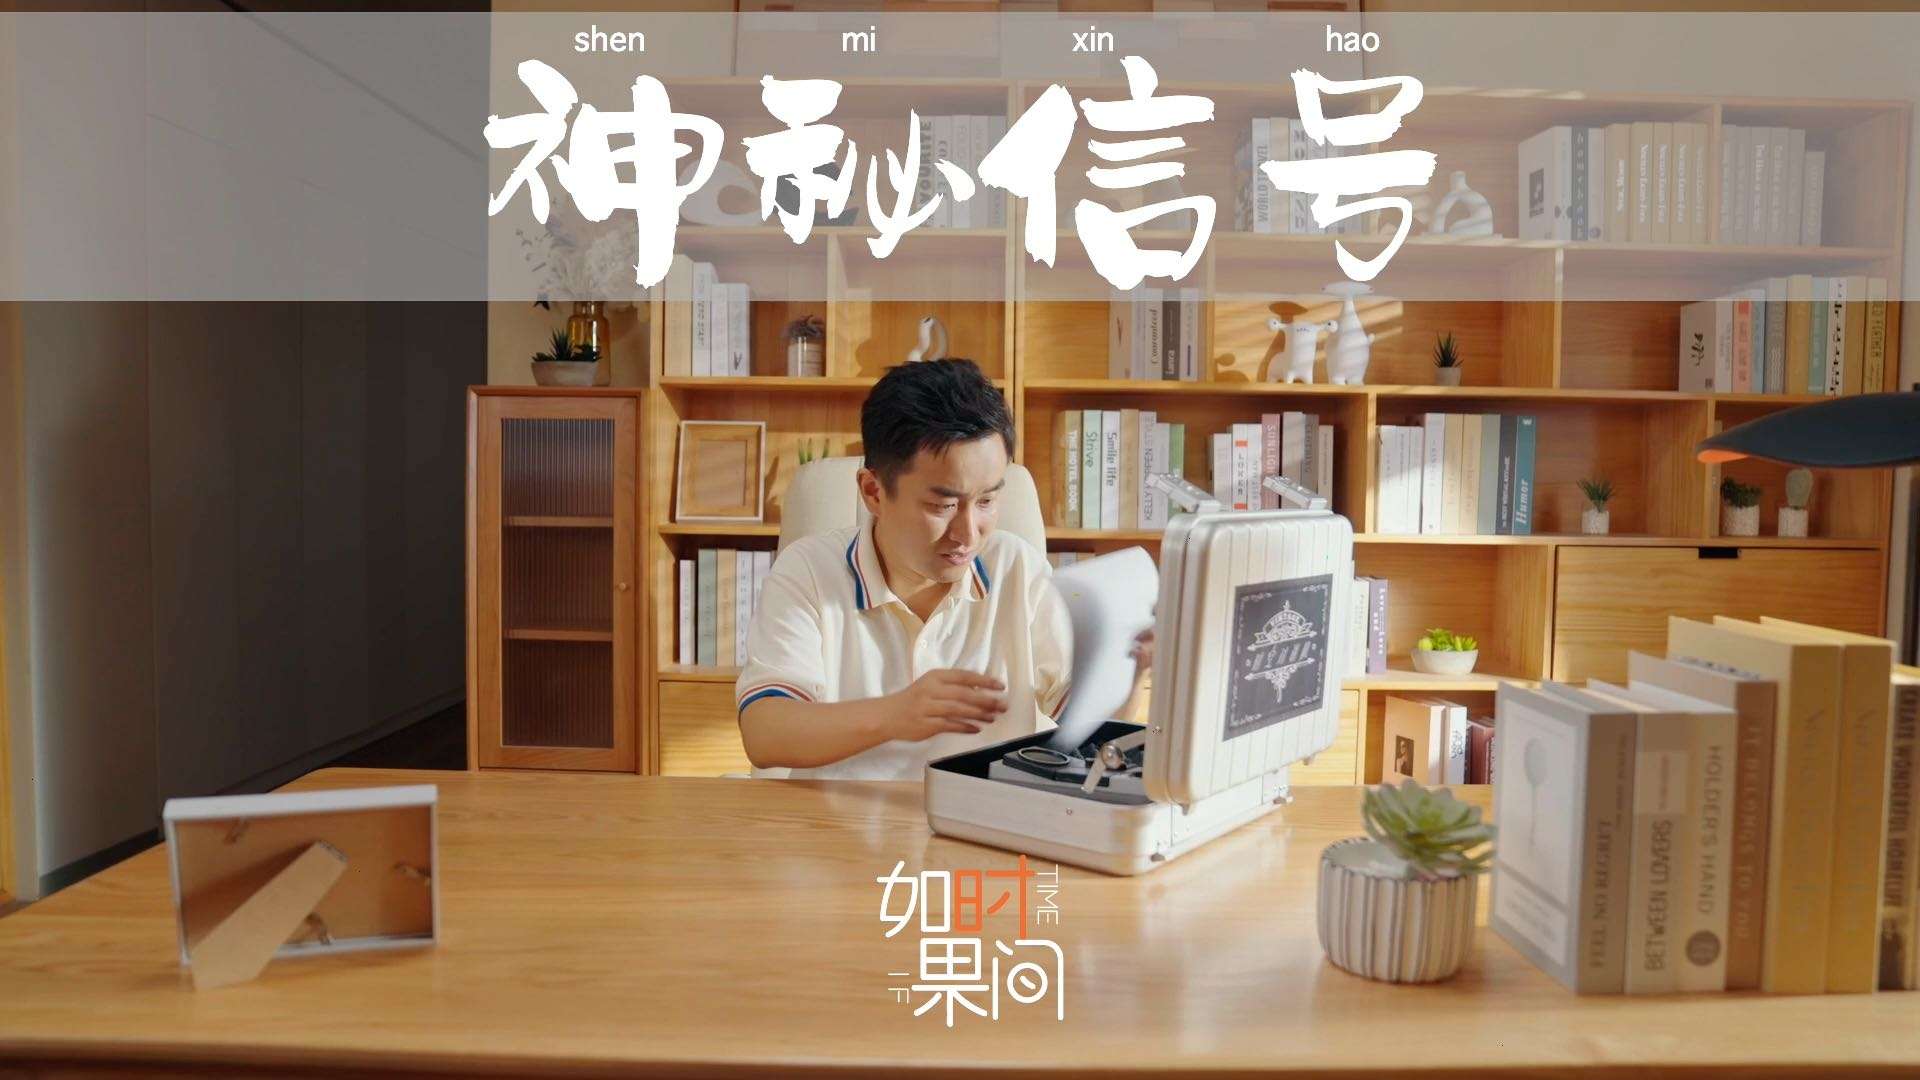 平安健康｜“如果时间”系列广告之《神秘信号》